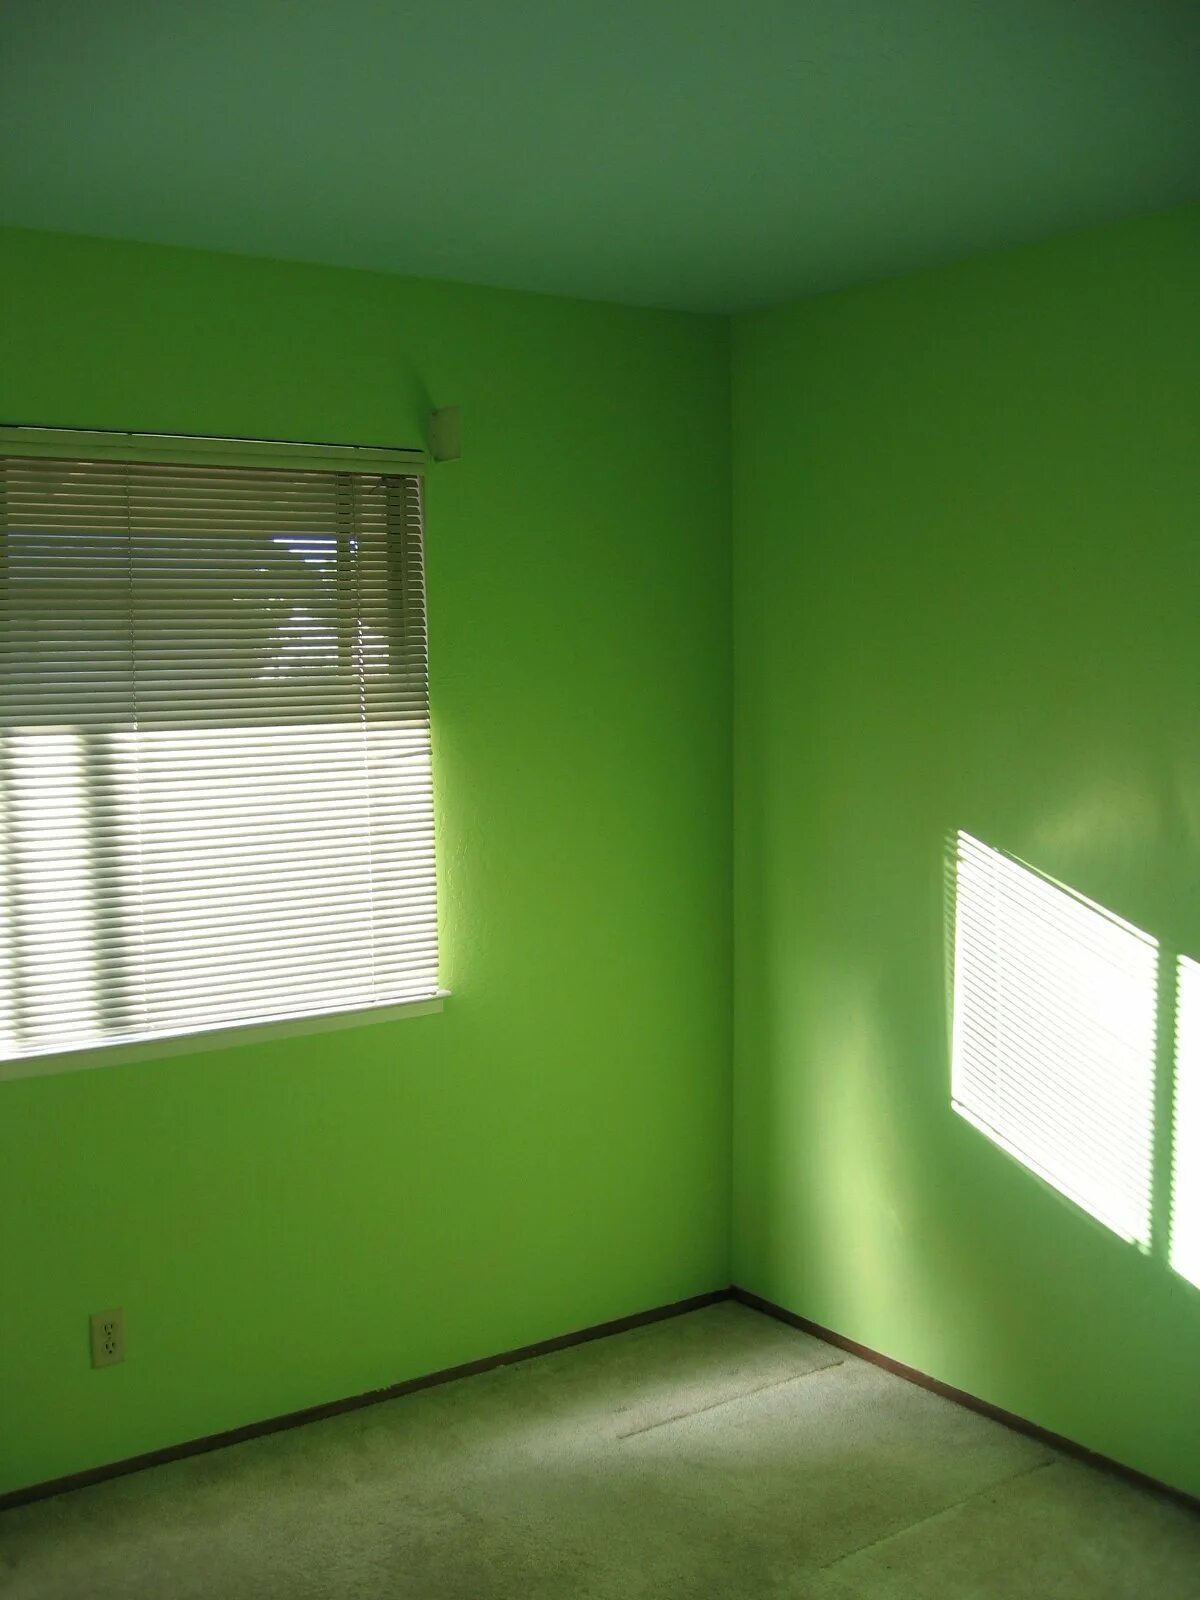 Предмет покрашен краской зеленого цвета. Покрашенные стены. Салатовые стены. Зеленая краска для стен в квартире. Крашеные стены в комнате.